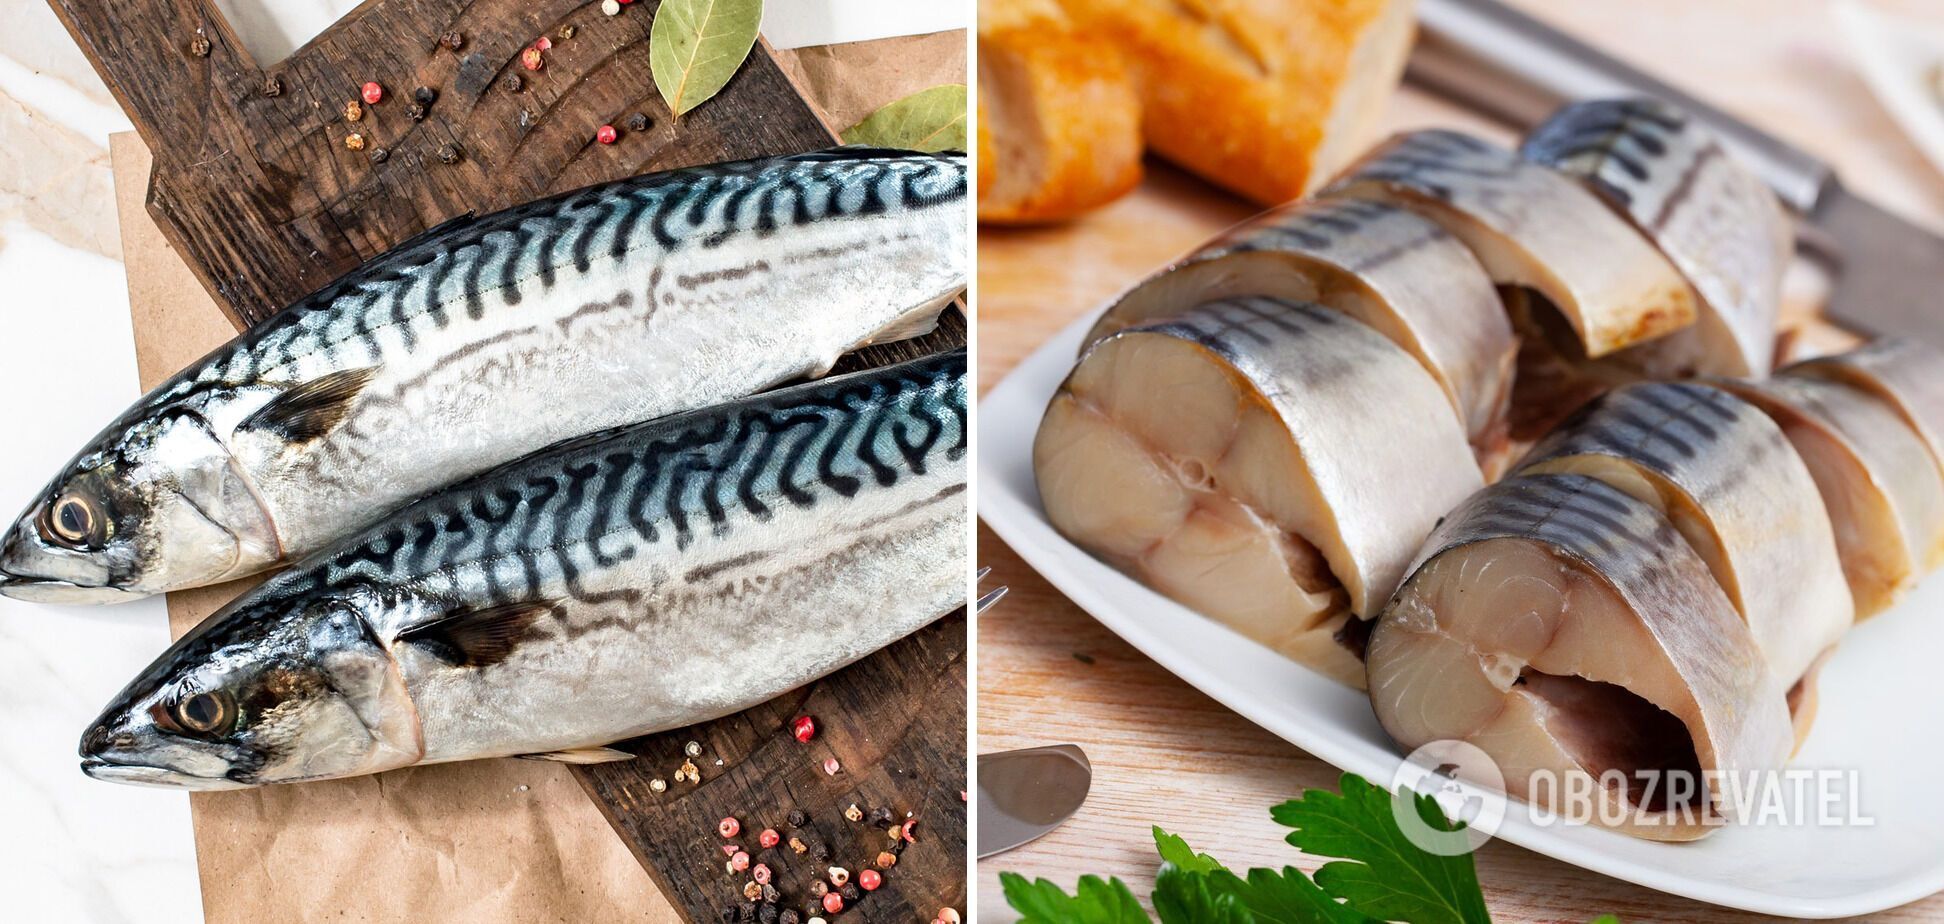 How to marinate mackerel deliciously